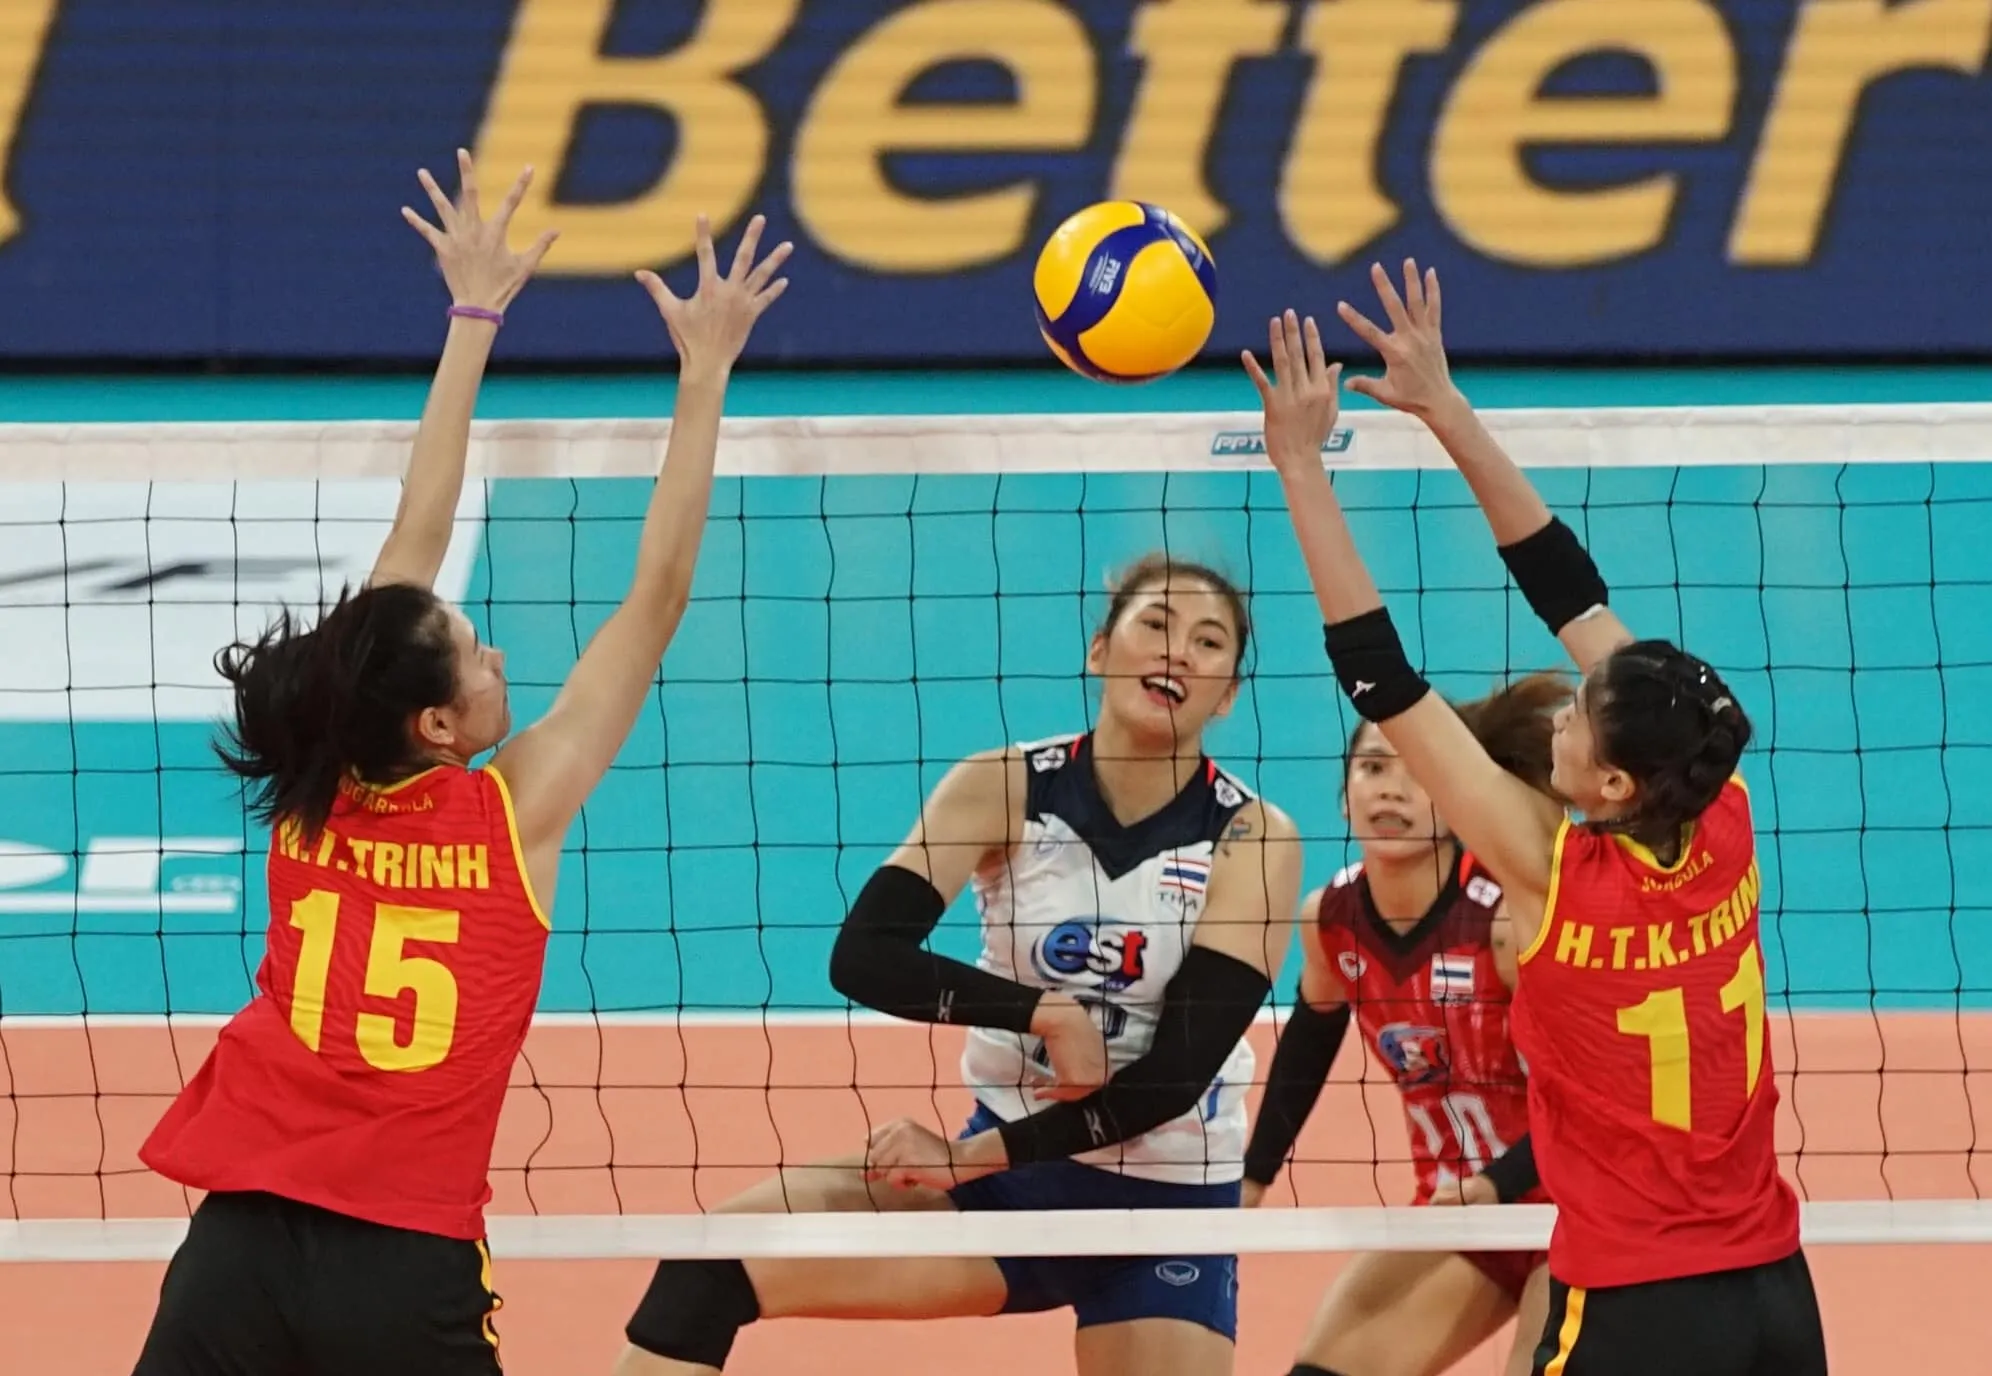 Lý Hoàng Nam chạm thứ hạng 290 lịch sử - ĐT nữ Việt Nam xếp hạng 4 tại AVC Cup 2022